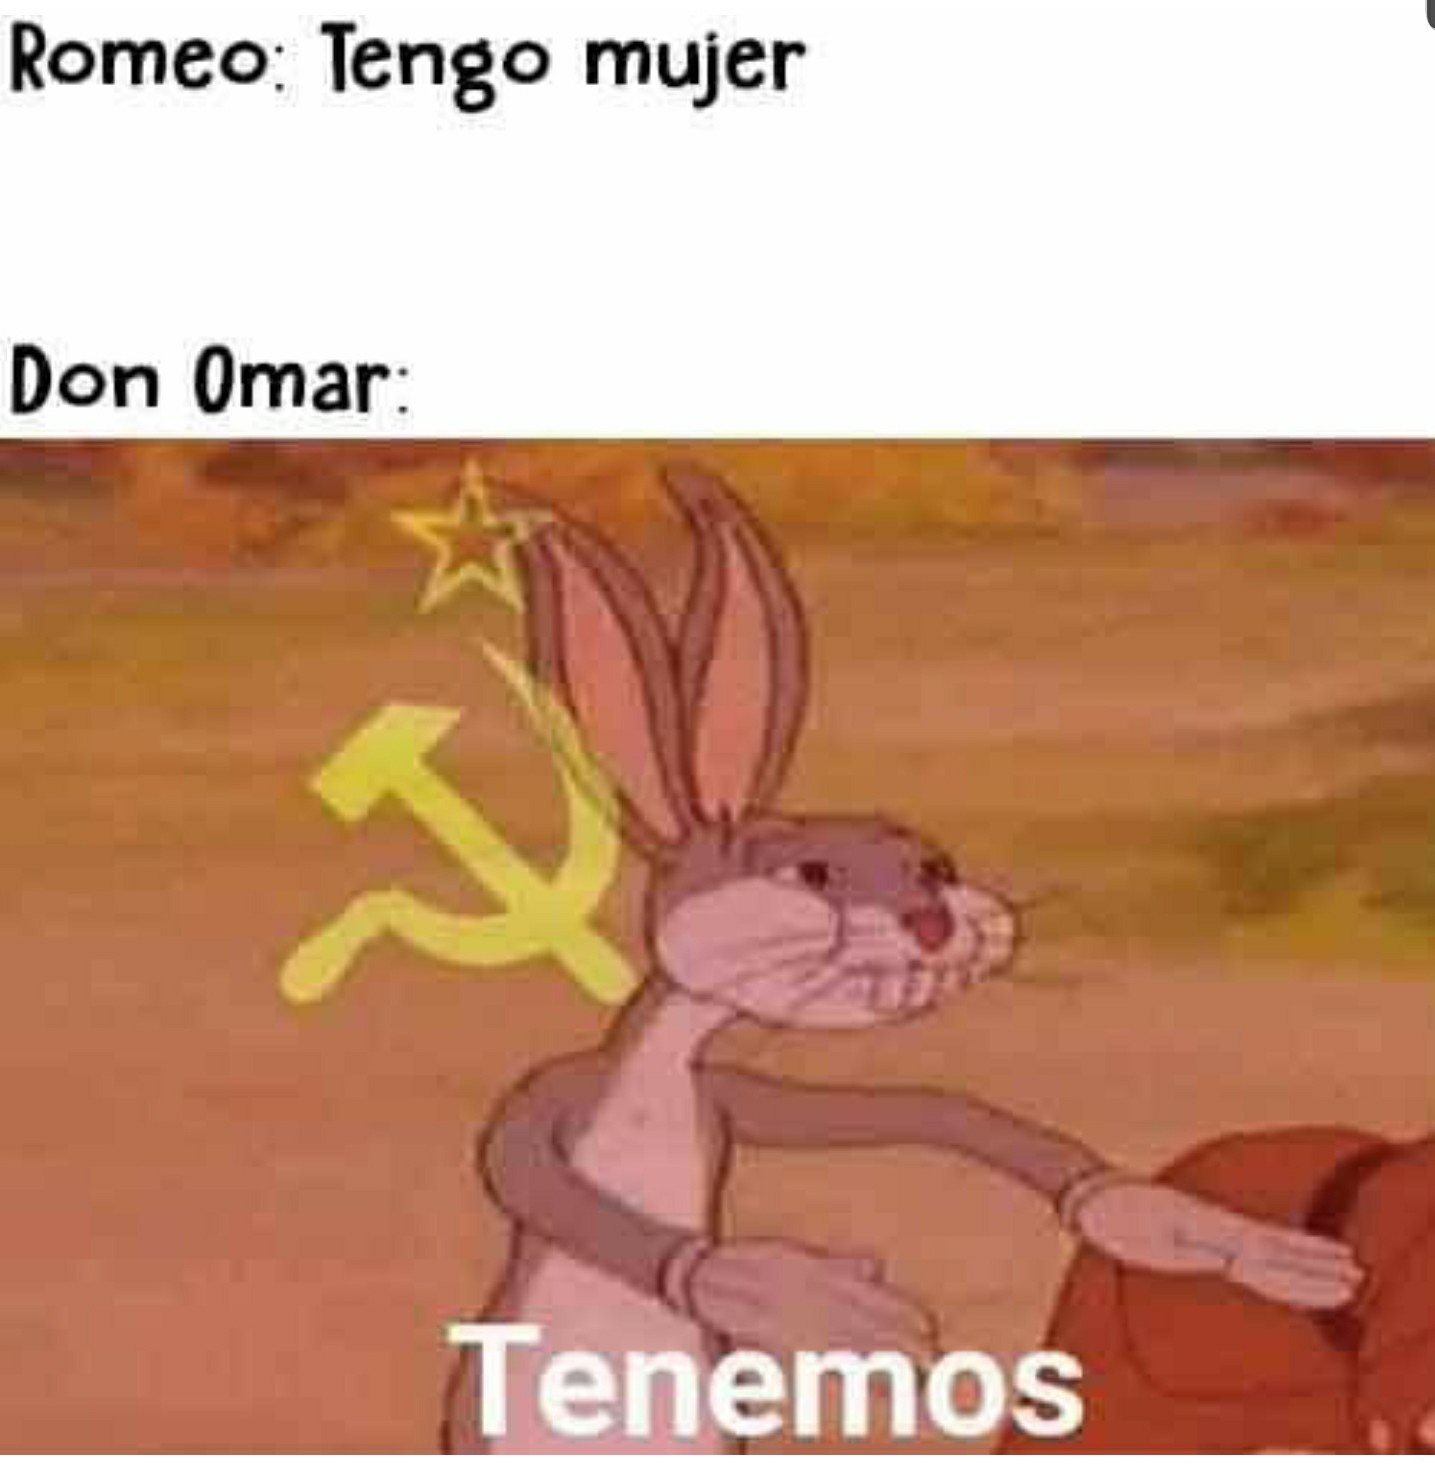 Comunismo - meme